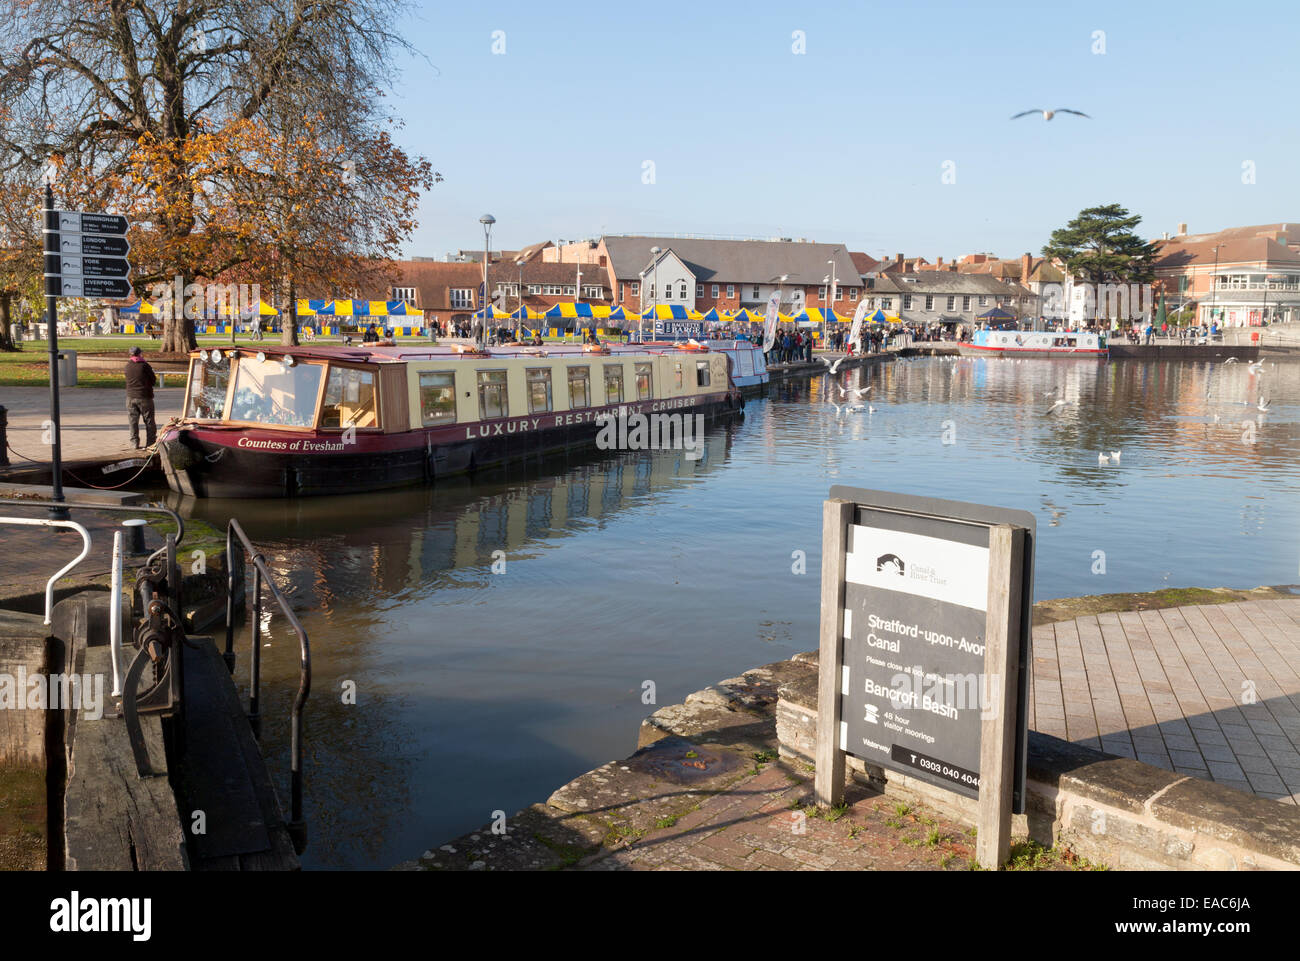 Imbarcazioni strette in Stratford upon Avon canal nel centro della città, a Stratford upon Avon, Warwickshire, Regno Unito Foto Stock